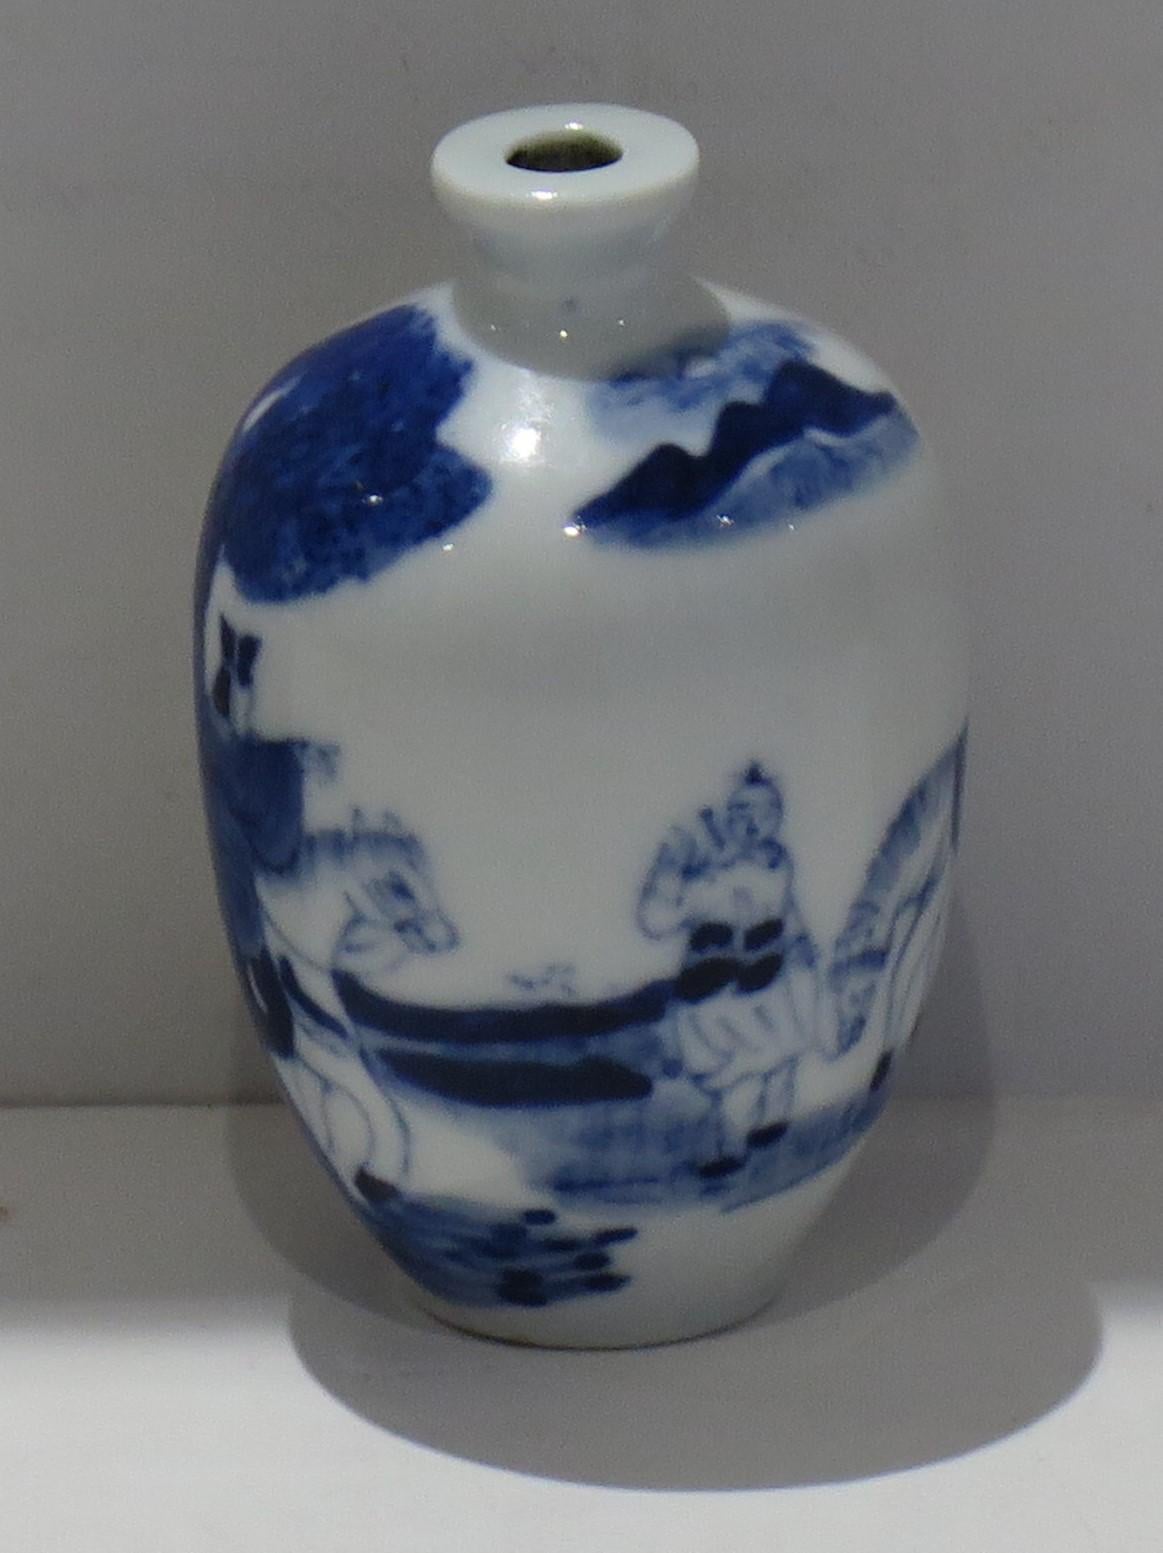 Dies ist eine sehr gute Qualität chinesische Schnupftabakflasche, aus Porzellan und fein von Hand bemalt in Kobaltblau, aus der Mitte des 19. Jahrhunderts, Qing, Xianfeng Zeitraum ca. 1850er Jahren.

Dieses Stück ist gut getopft mit einem Baluster